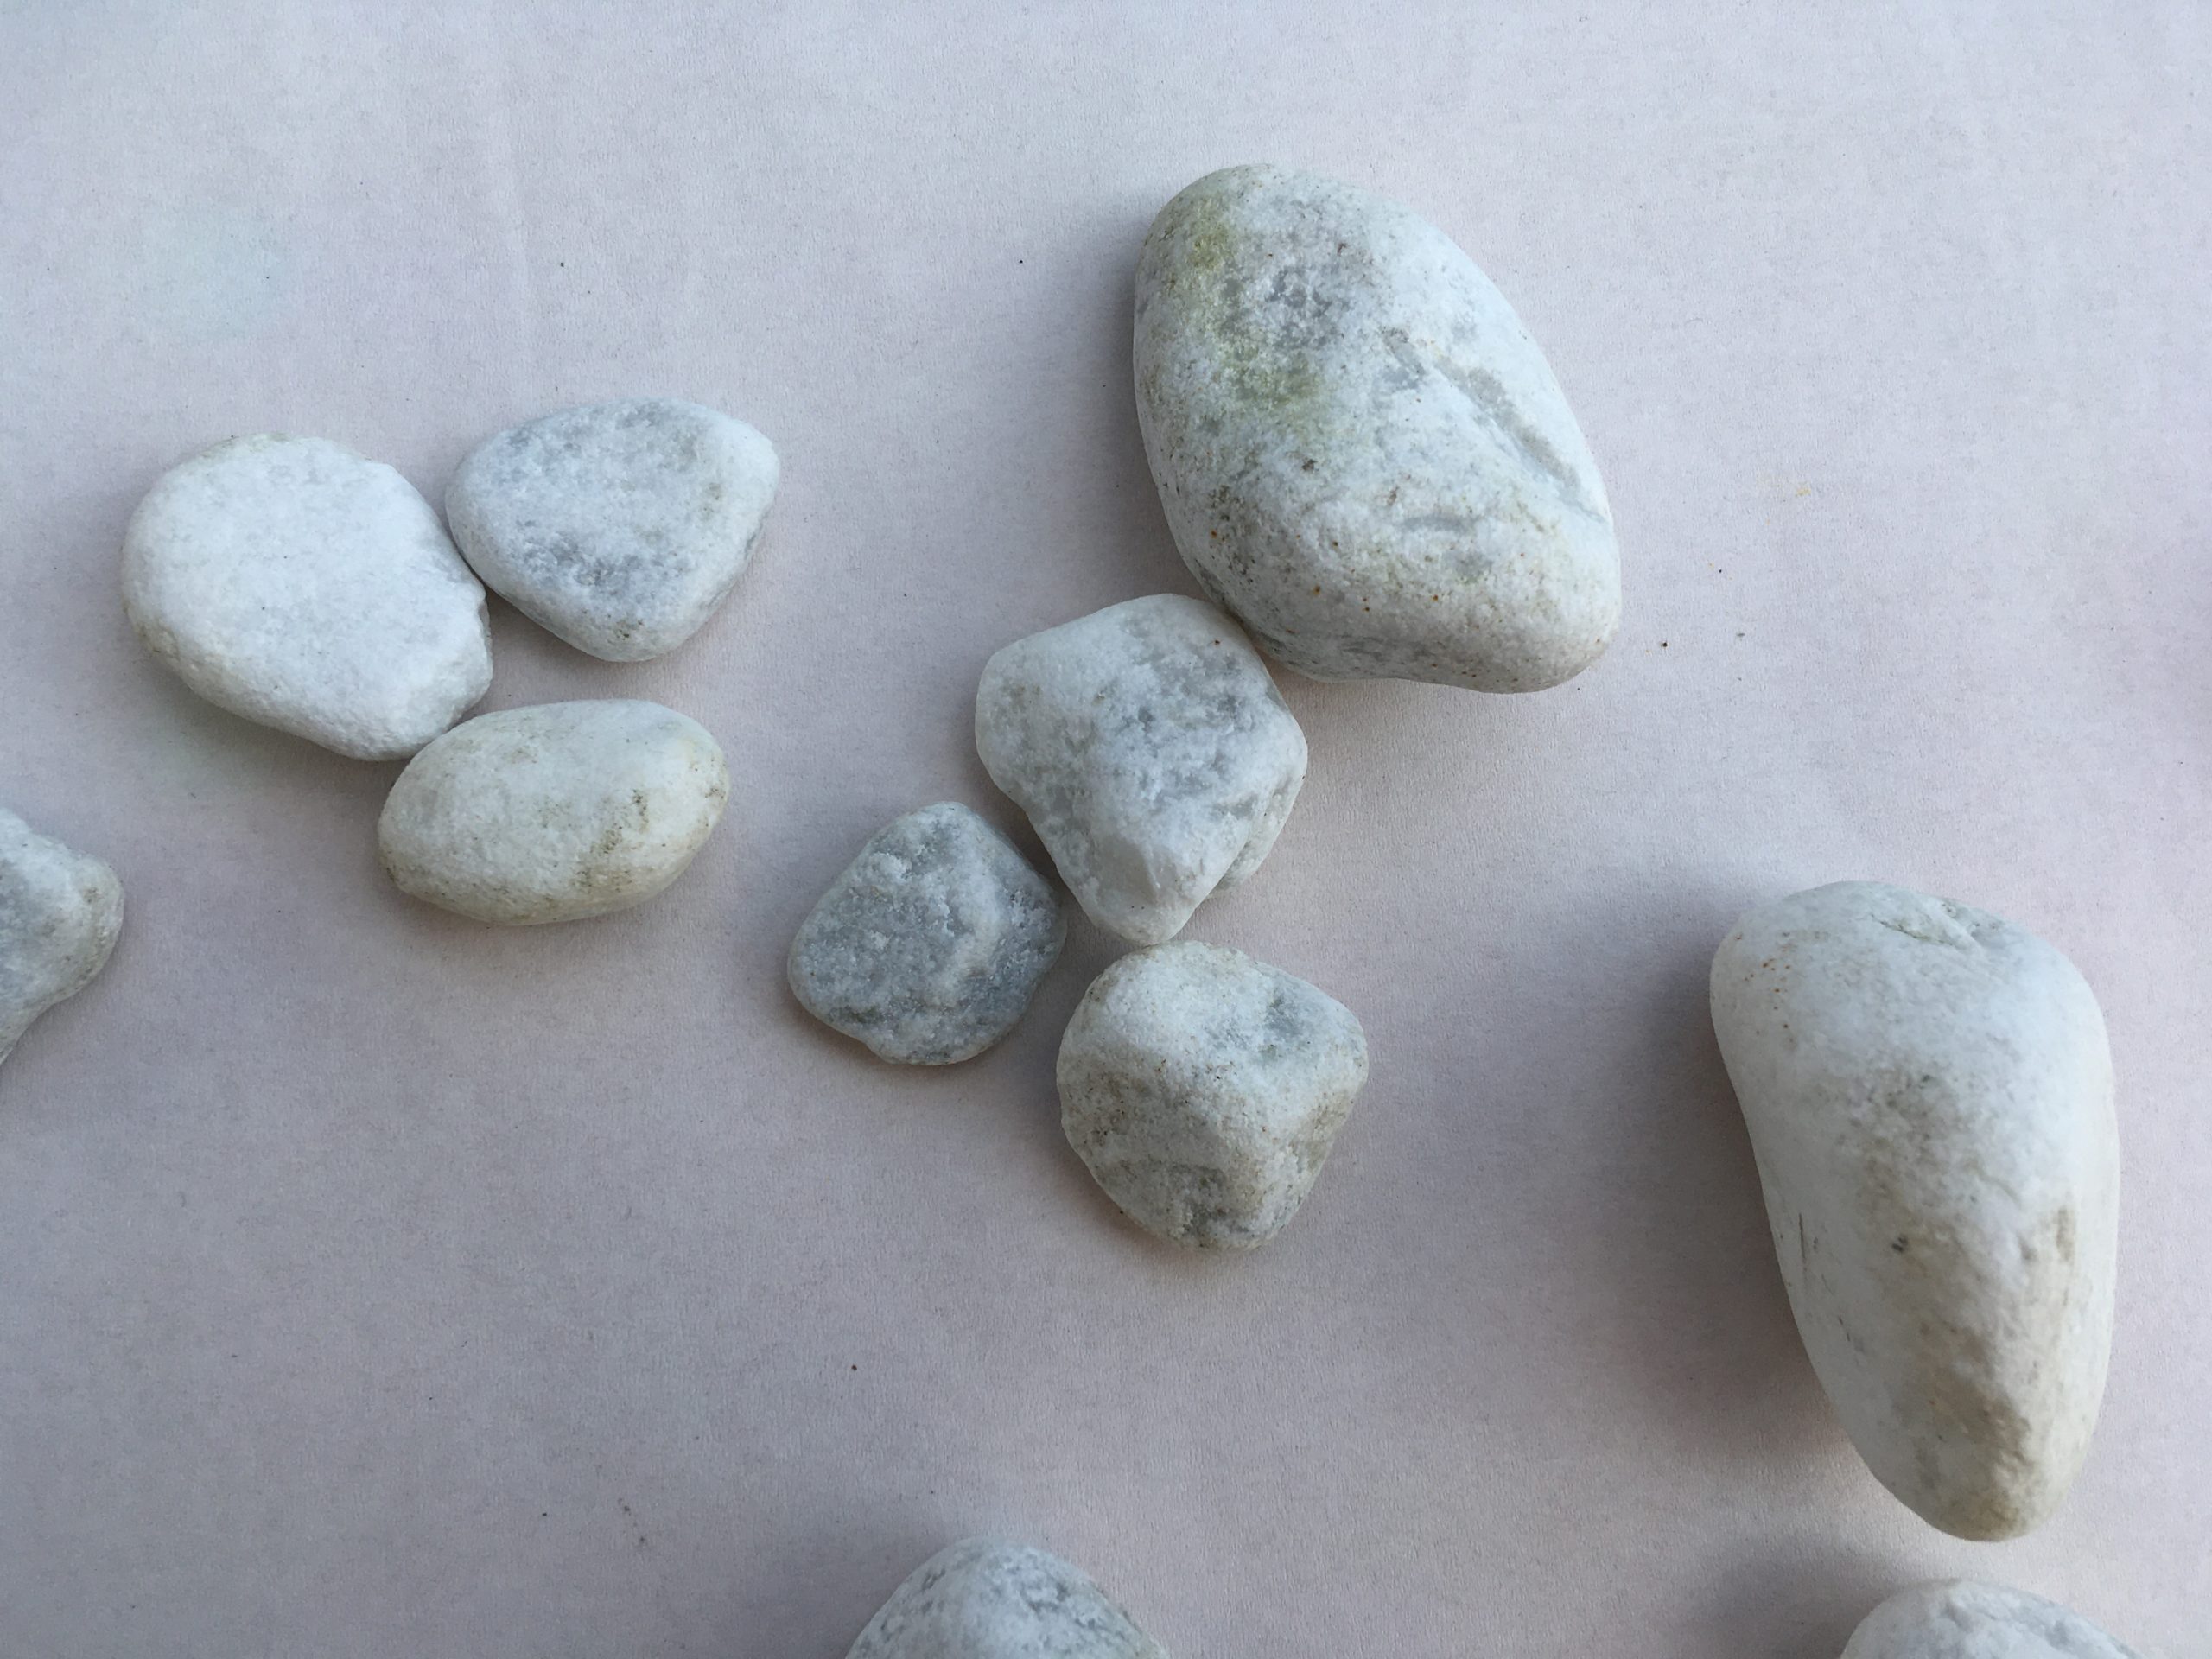 Bild zum Schritt 1 für das Bastel- und DIY-Abenteuer für Kinder: 'Sucht passende Steine.   Tipp: sucht helle Steine, bei...'